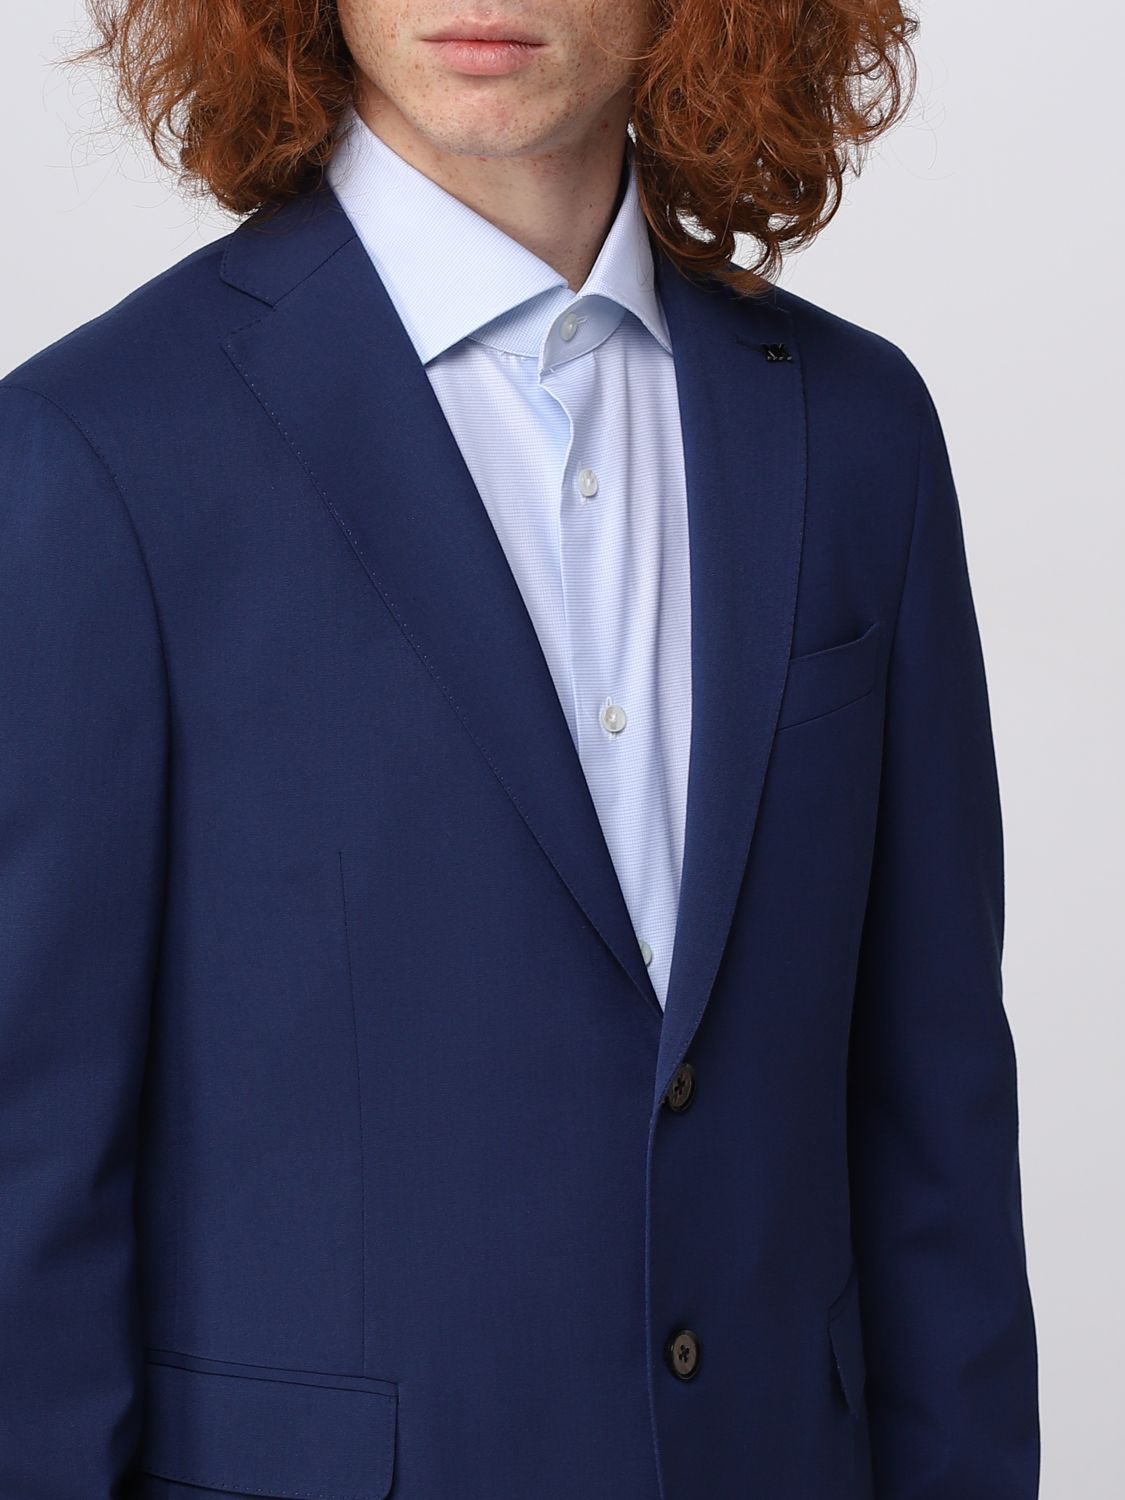 MICHAEL KORS: suit for men - Blue | Michael Kors suit MD0MD91257 online on  